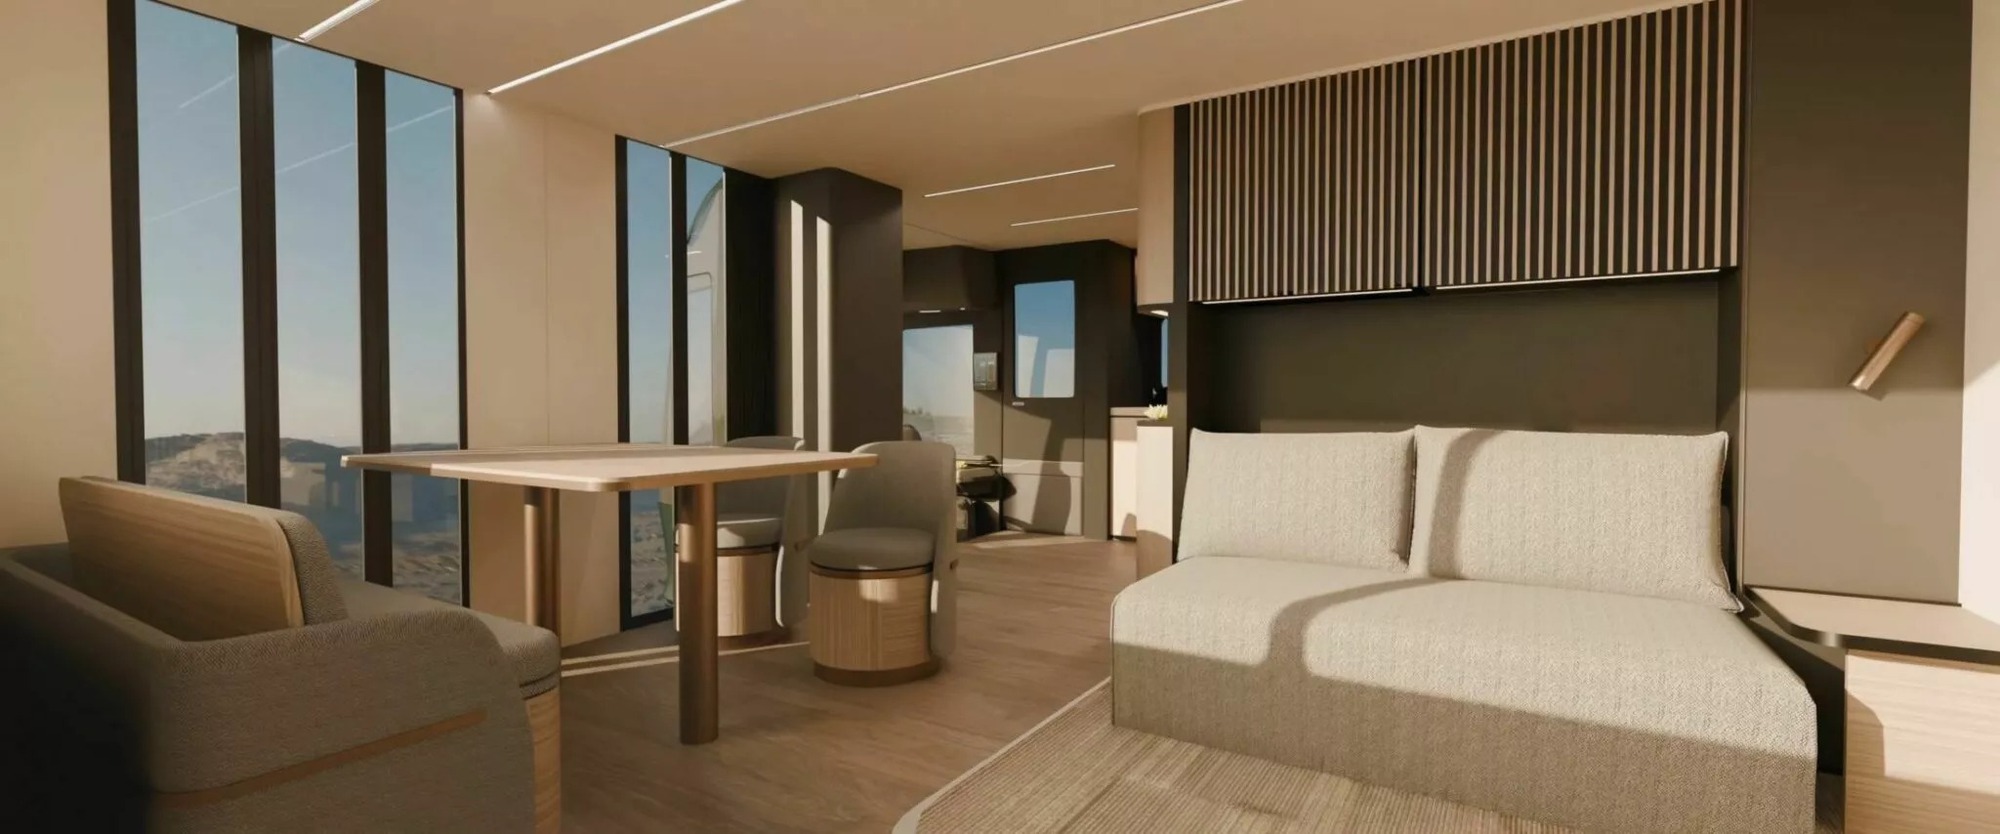 Hãng Ý thiết kế xe cho VinFast hé lộ xe mới có nội thất như chung cư: Đủ các phòng cơ bản với phong cách sang xịn - Ảnh 13.